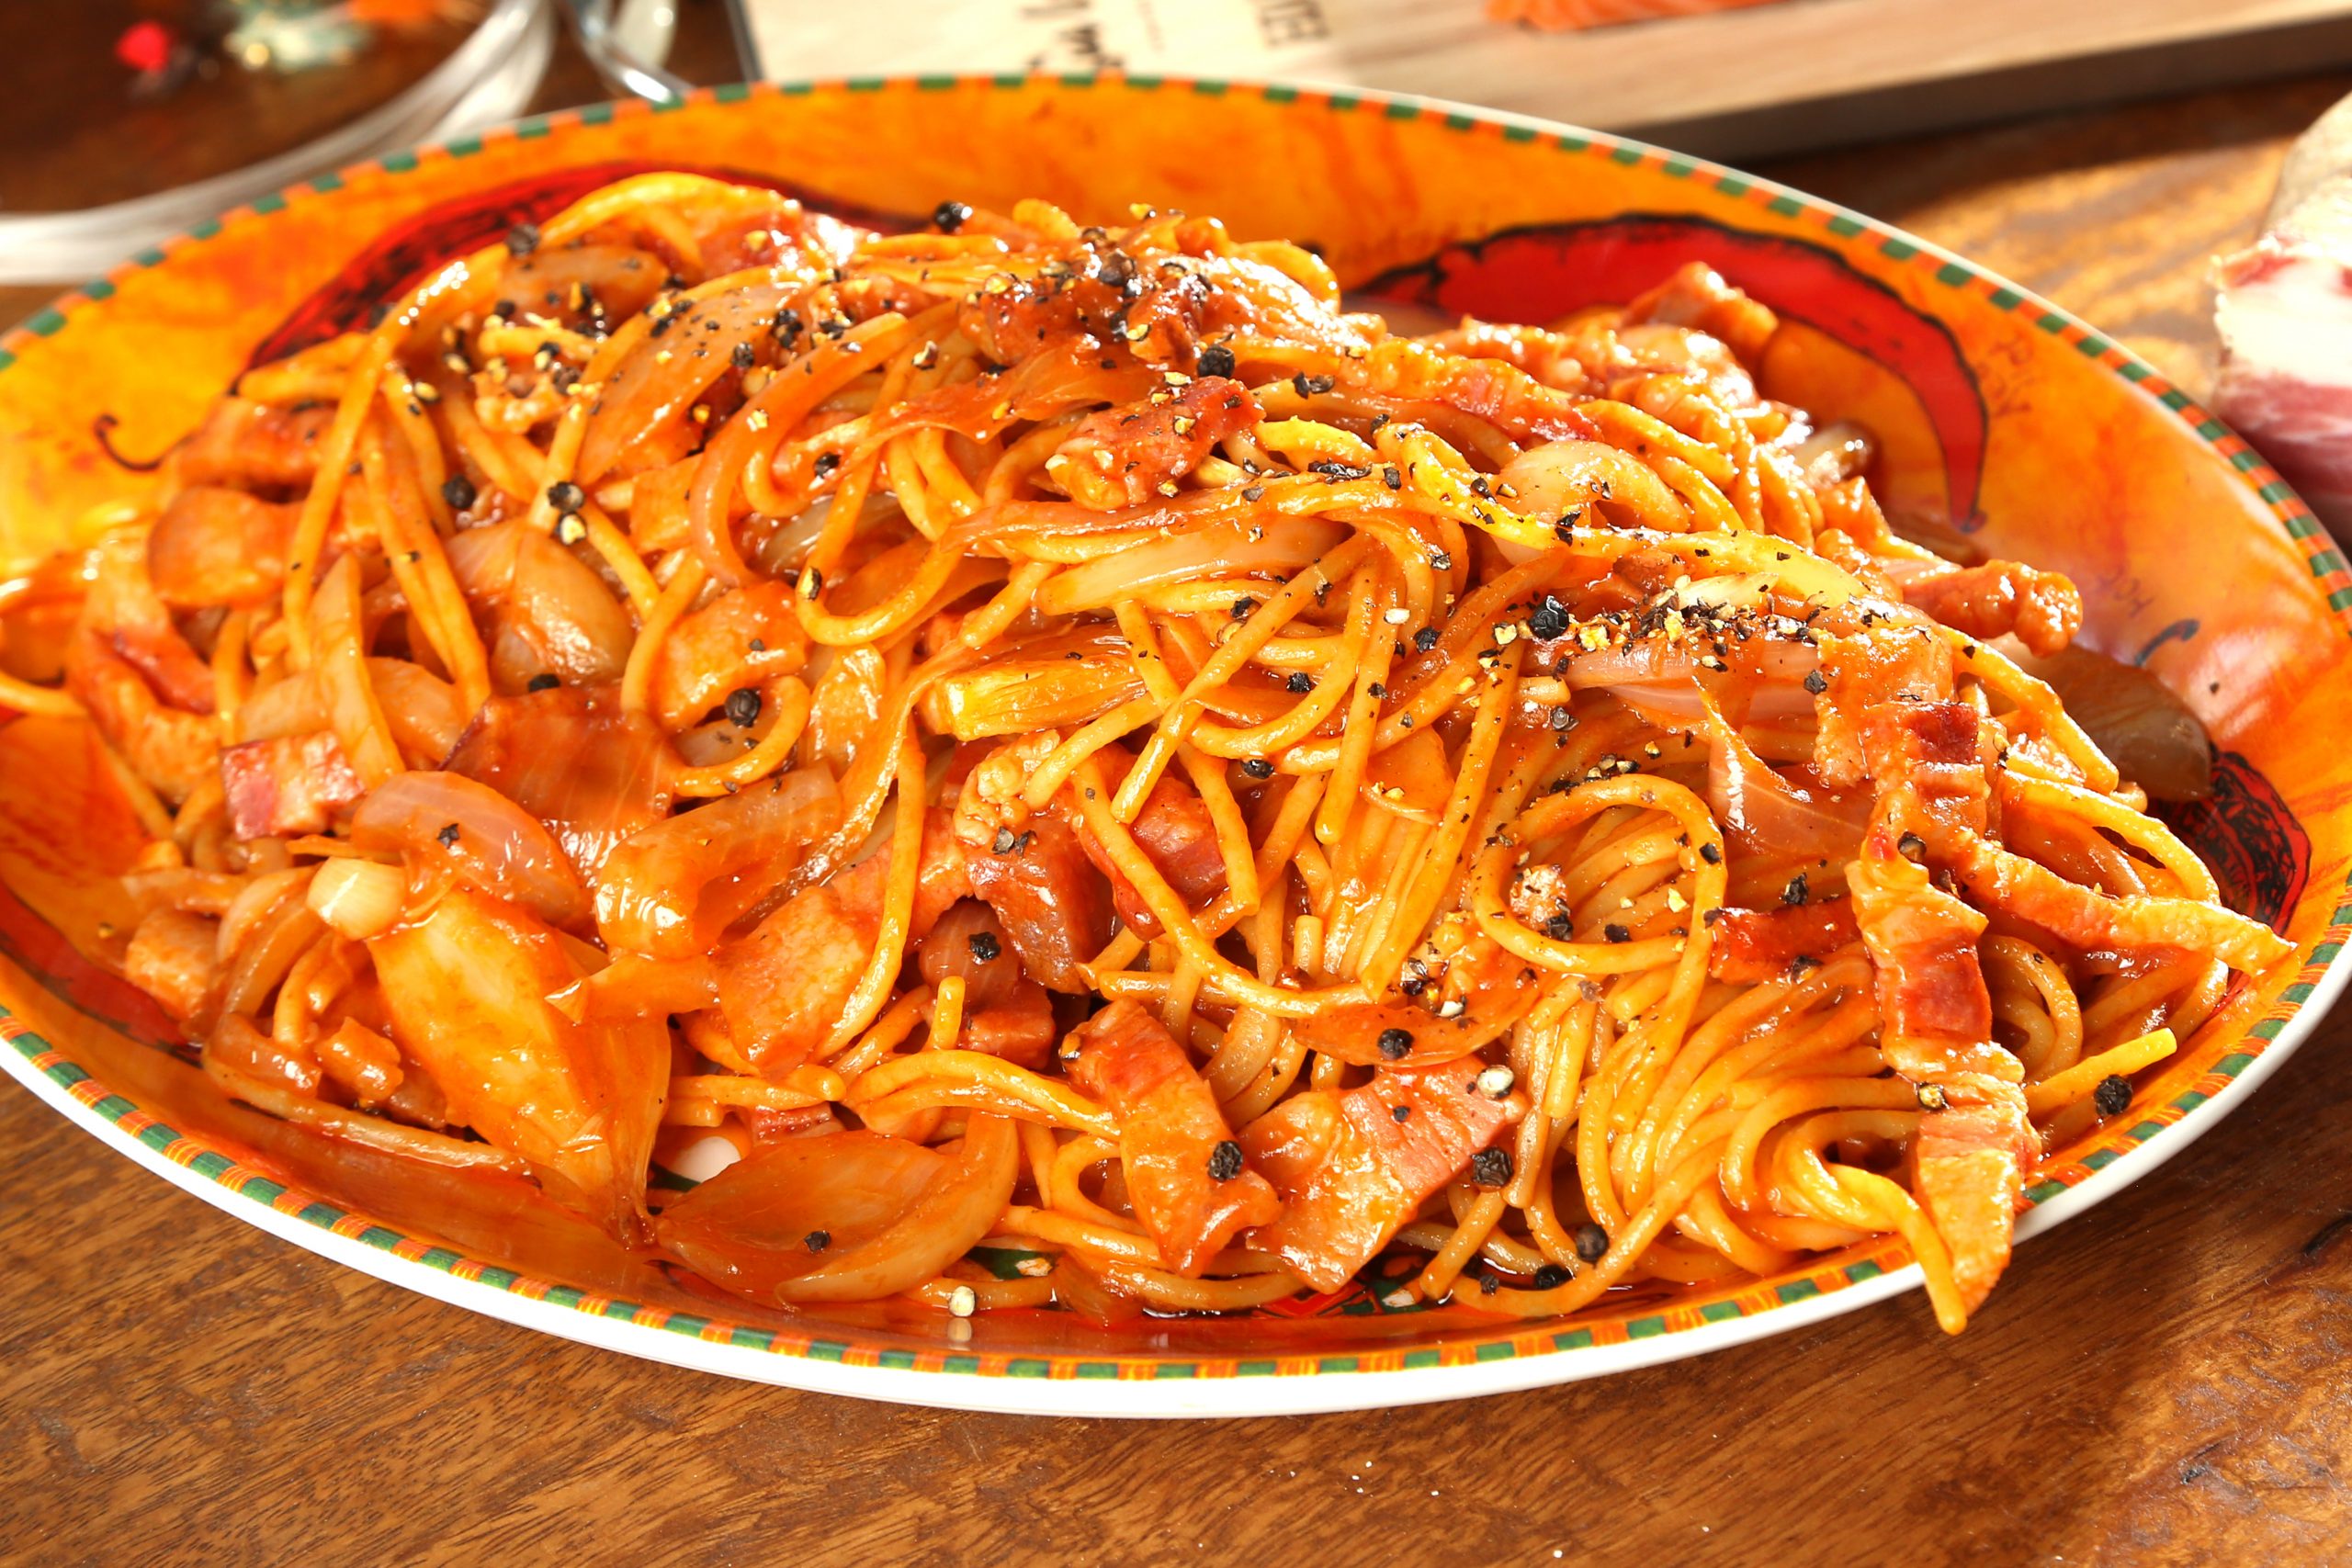 Spaghetti al salmone con guanciale, una ricetta piena di gusto!